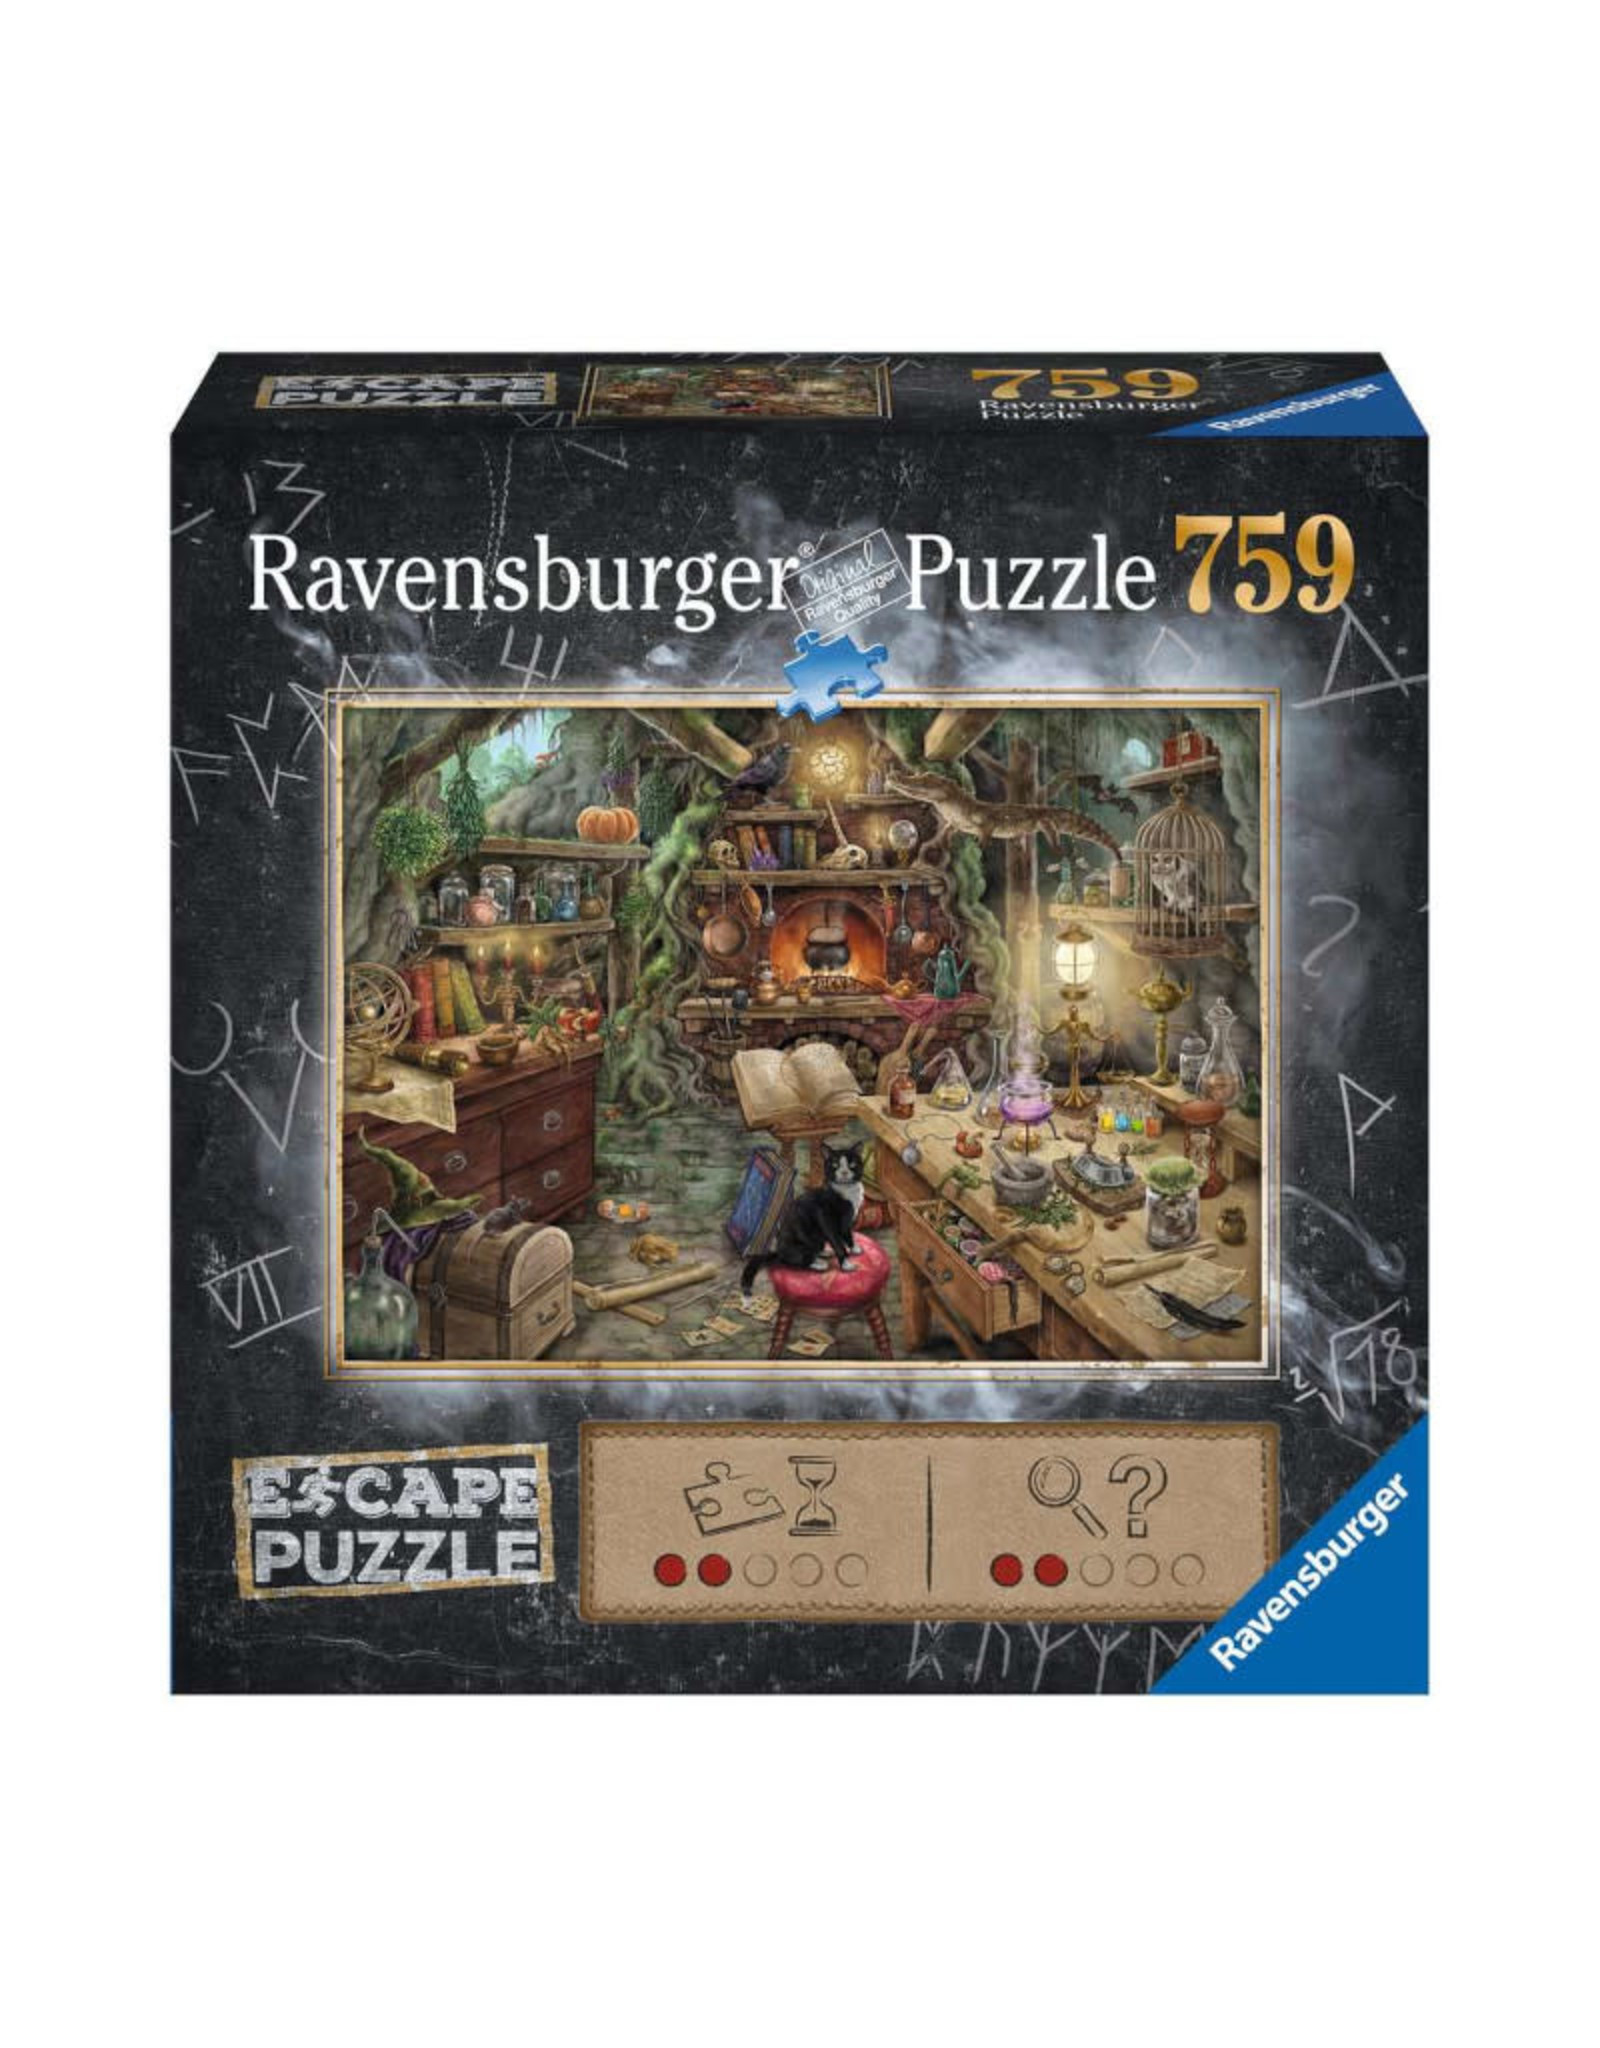 Ravensburger ESCAPE Puzzle: Witches Kitchen (759 PCS)